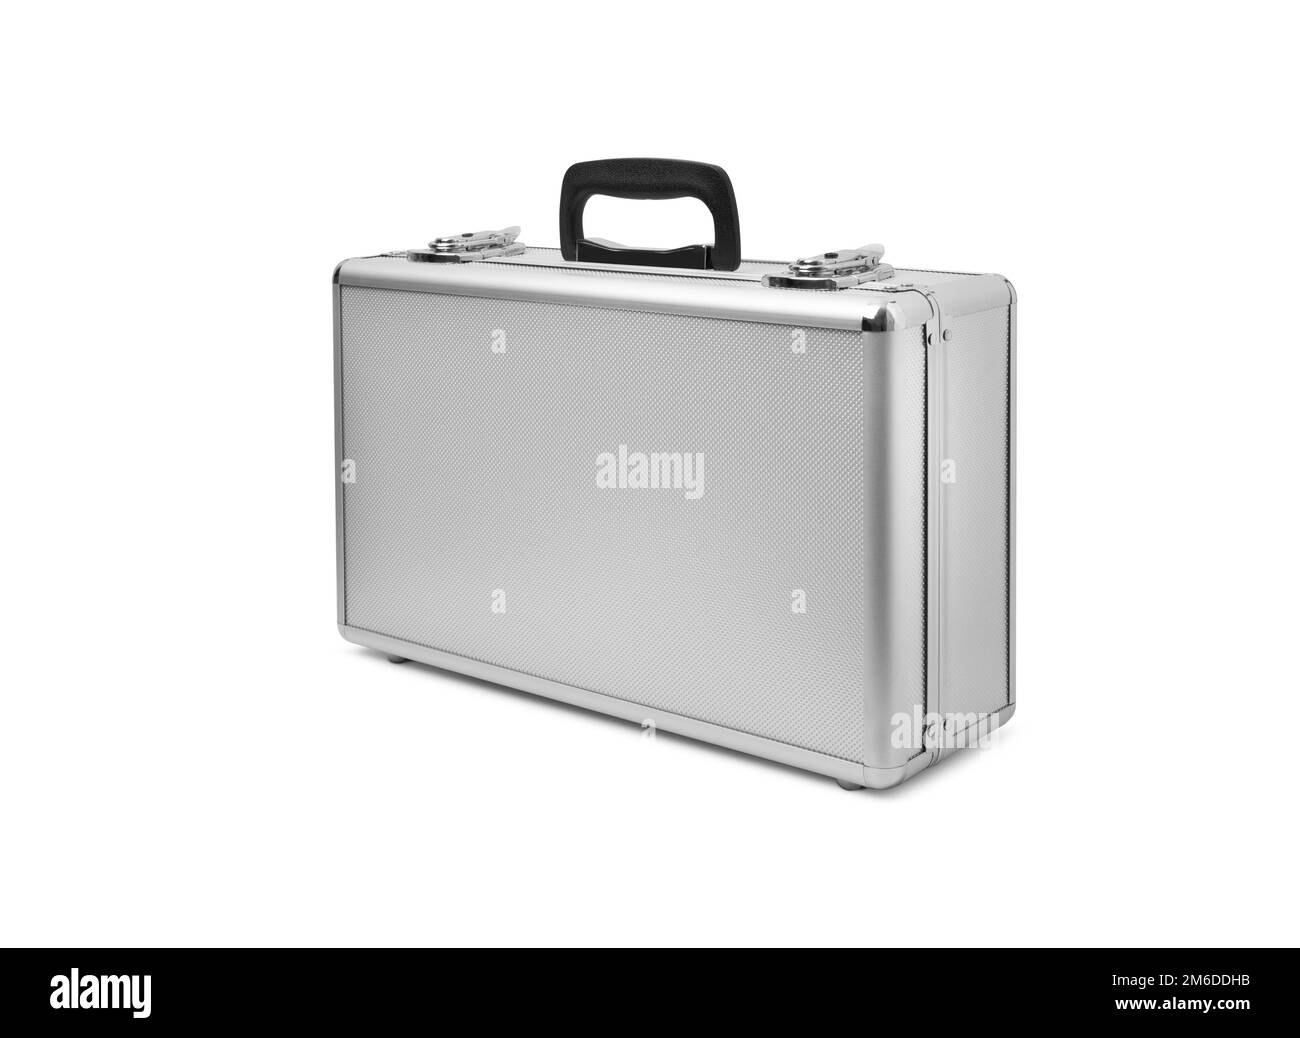 Metallic suitcase isolated on white background Stock Photo